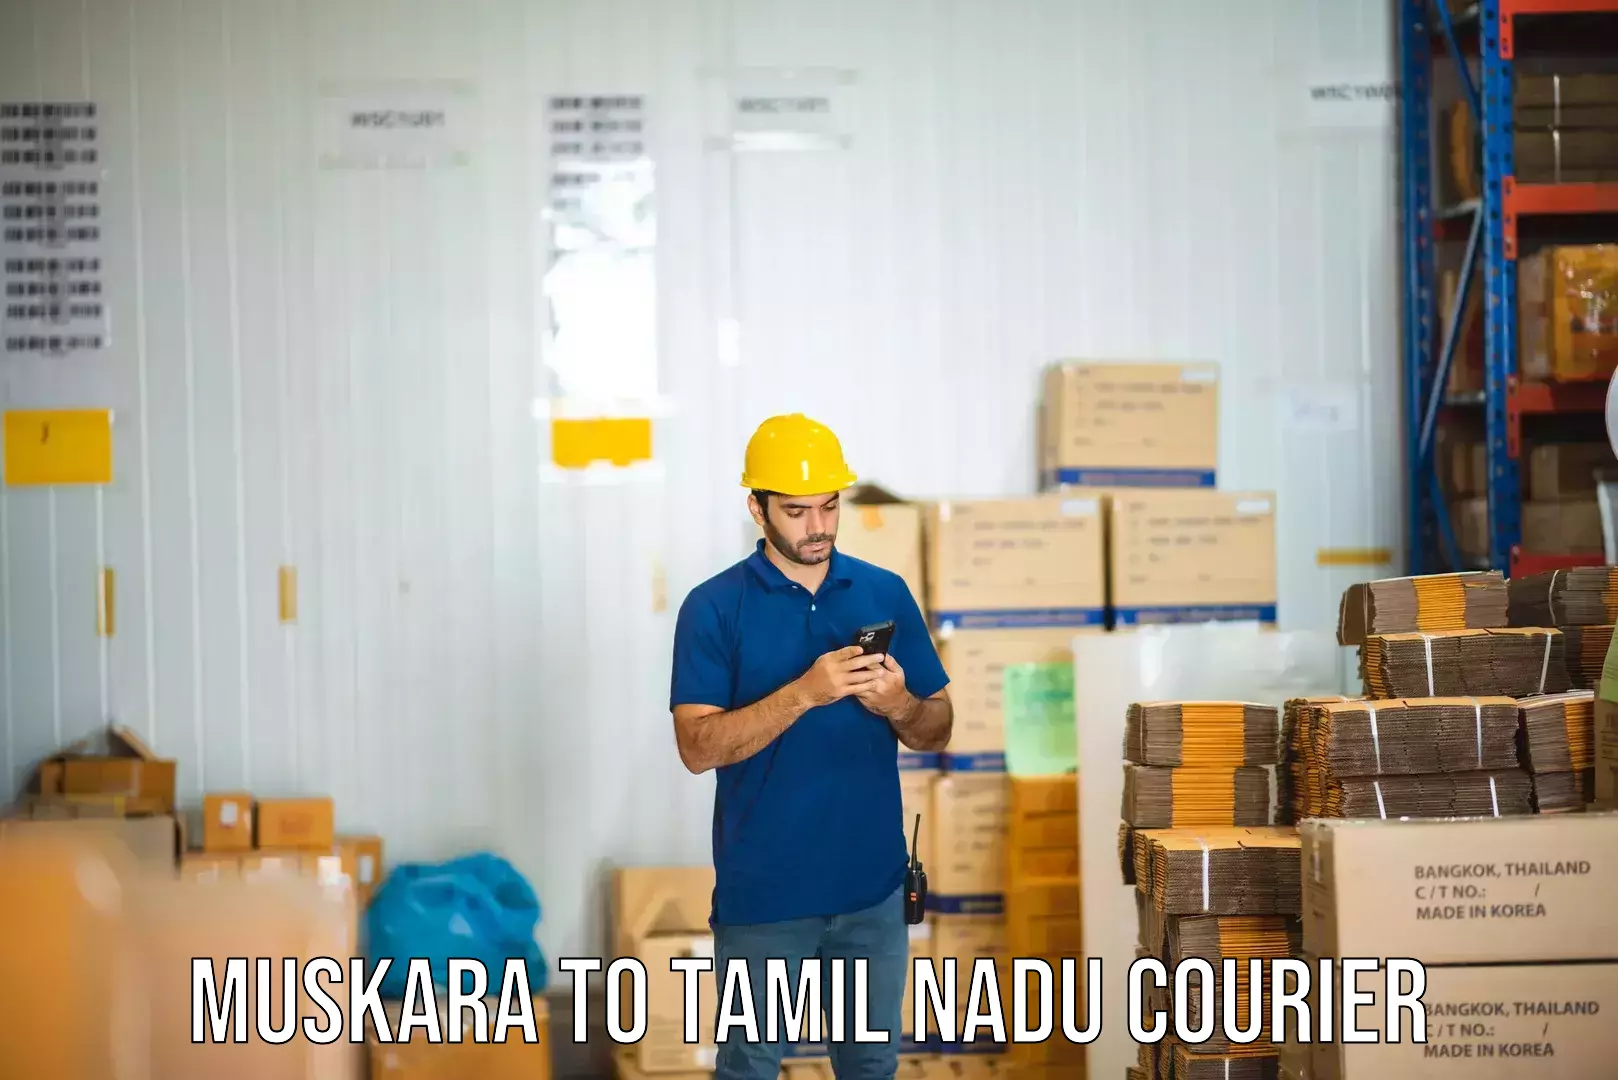 Optimized shipping routes Muskara to Tamil Nadu